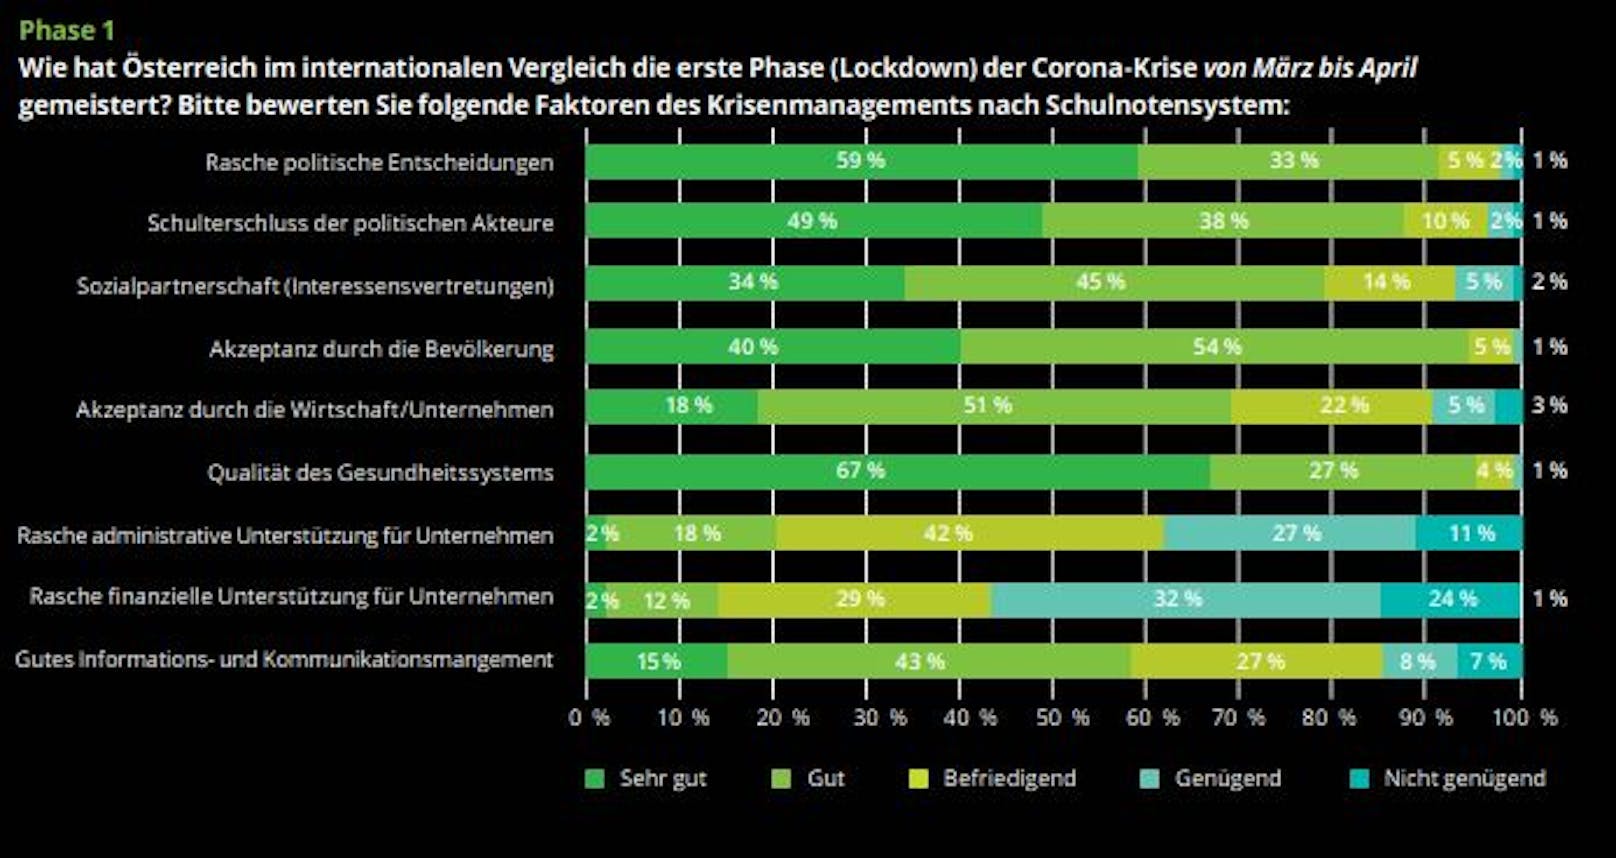 Die Beurteilung des Krisenmanagements am Standort Österreich ist tendenziell positiv – vor allem zu Beginn des COVID-19-Ausbruchs.